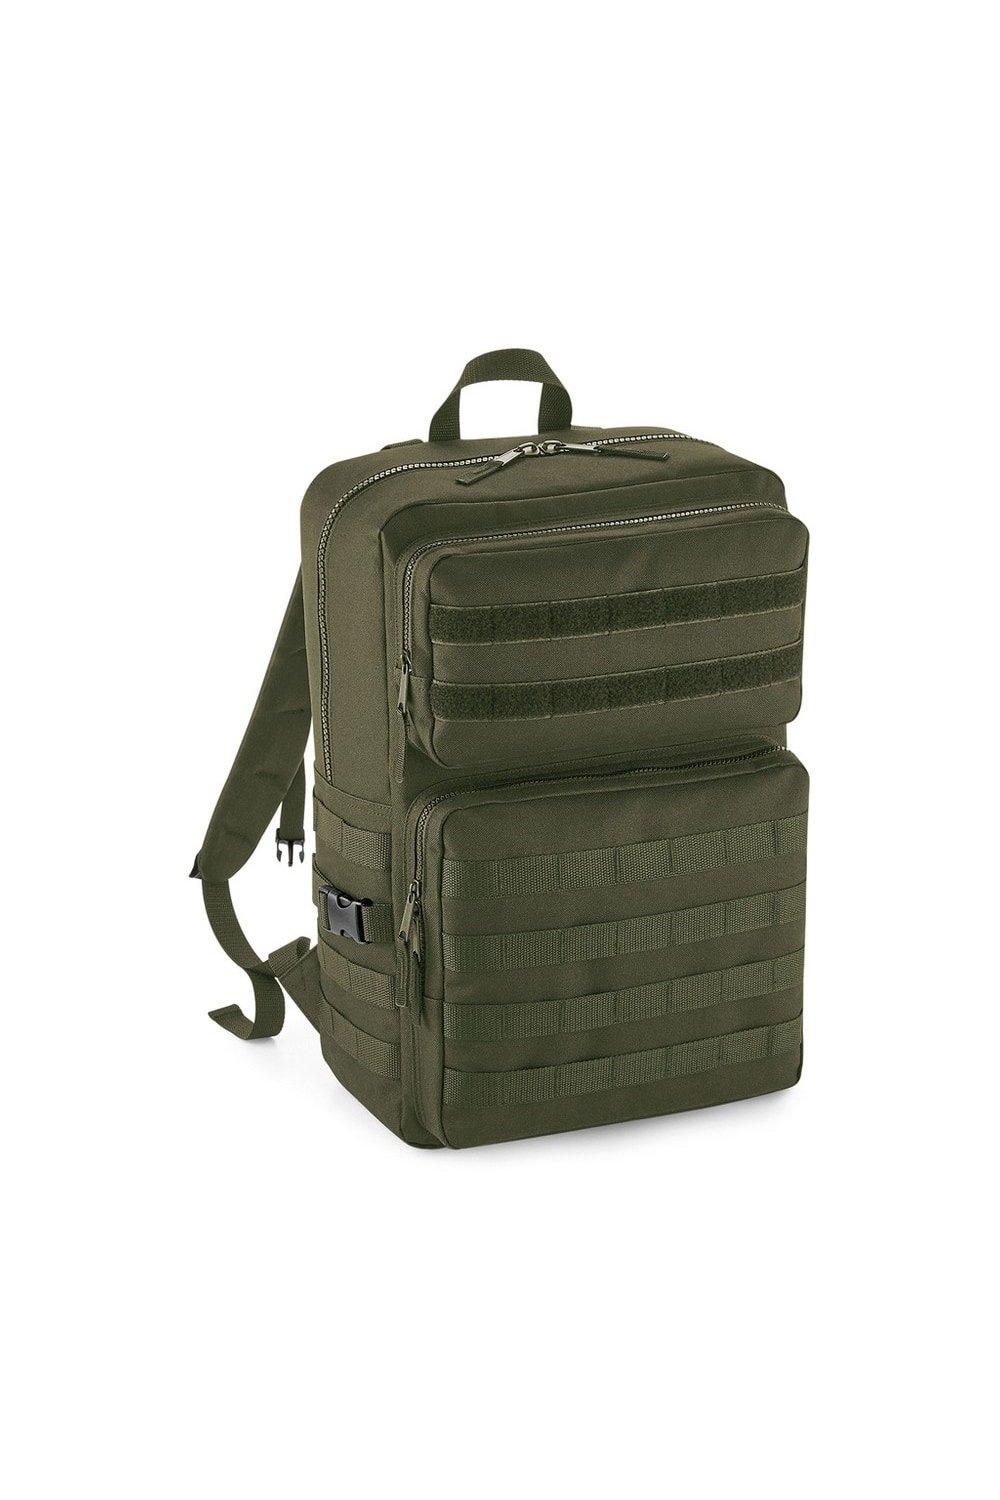 Тактический рюкзак MOLLE Bagbase, зеленый huntvp 1000d тактический рюкзак 45l molle рюкзак штурмовой пакет открытый кемпинг туризм рюкзак открытый рюкзак многоцветный